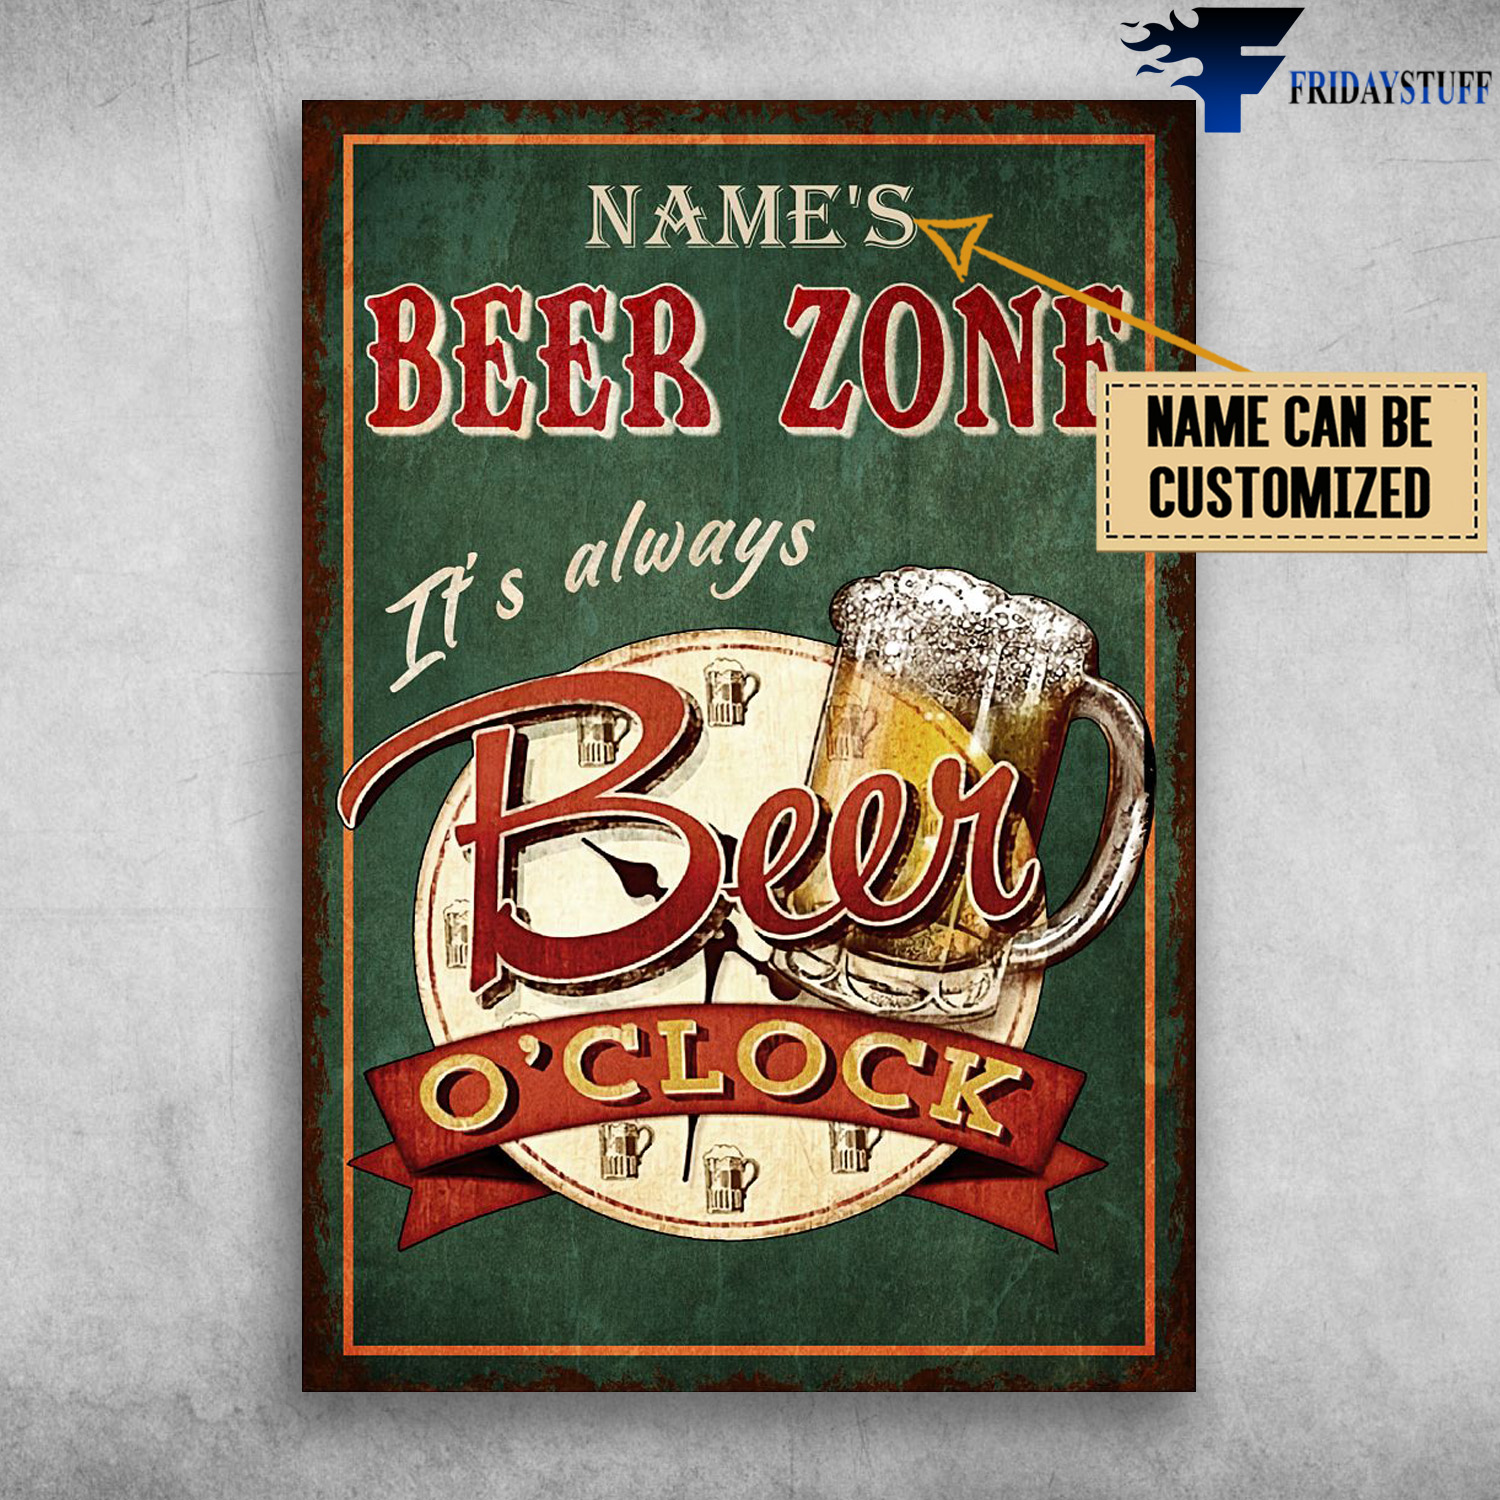 Beer Zone, It's Always Beer O'clock